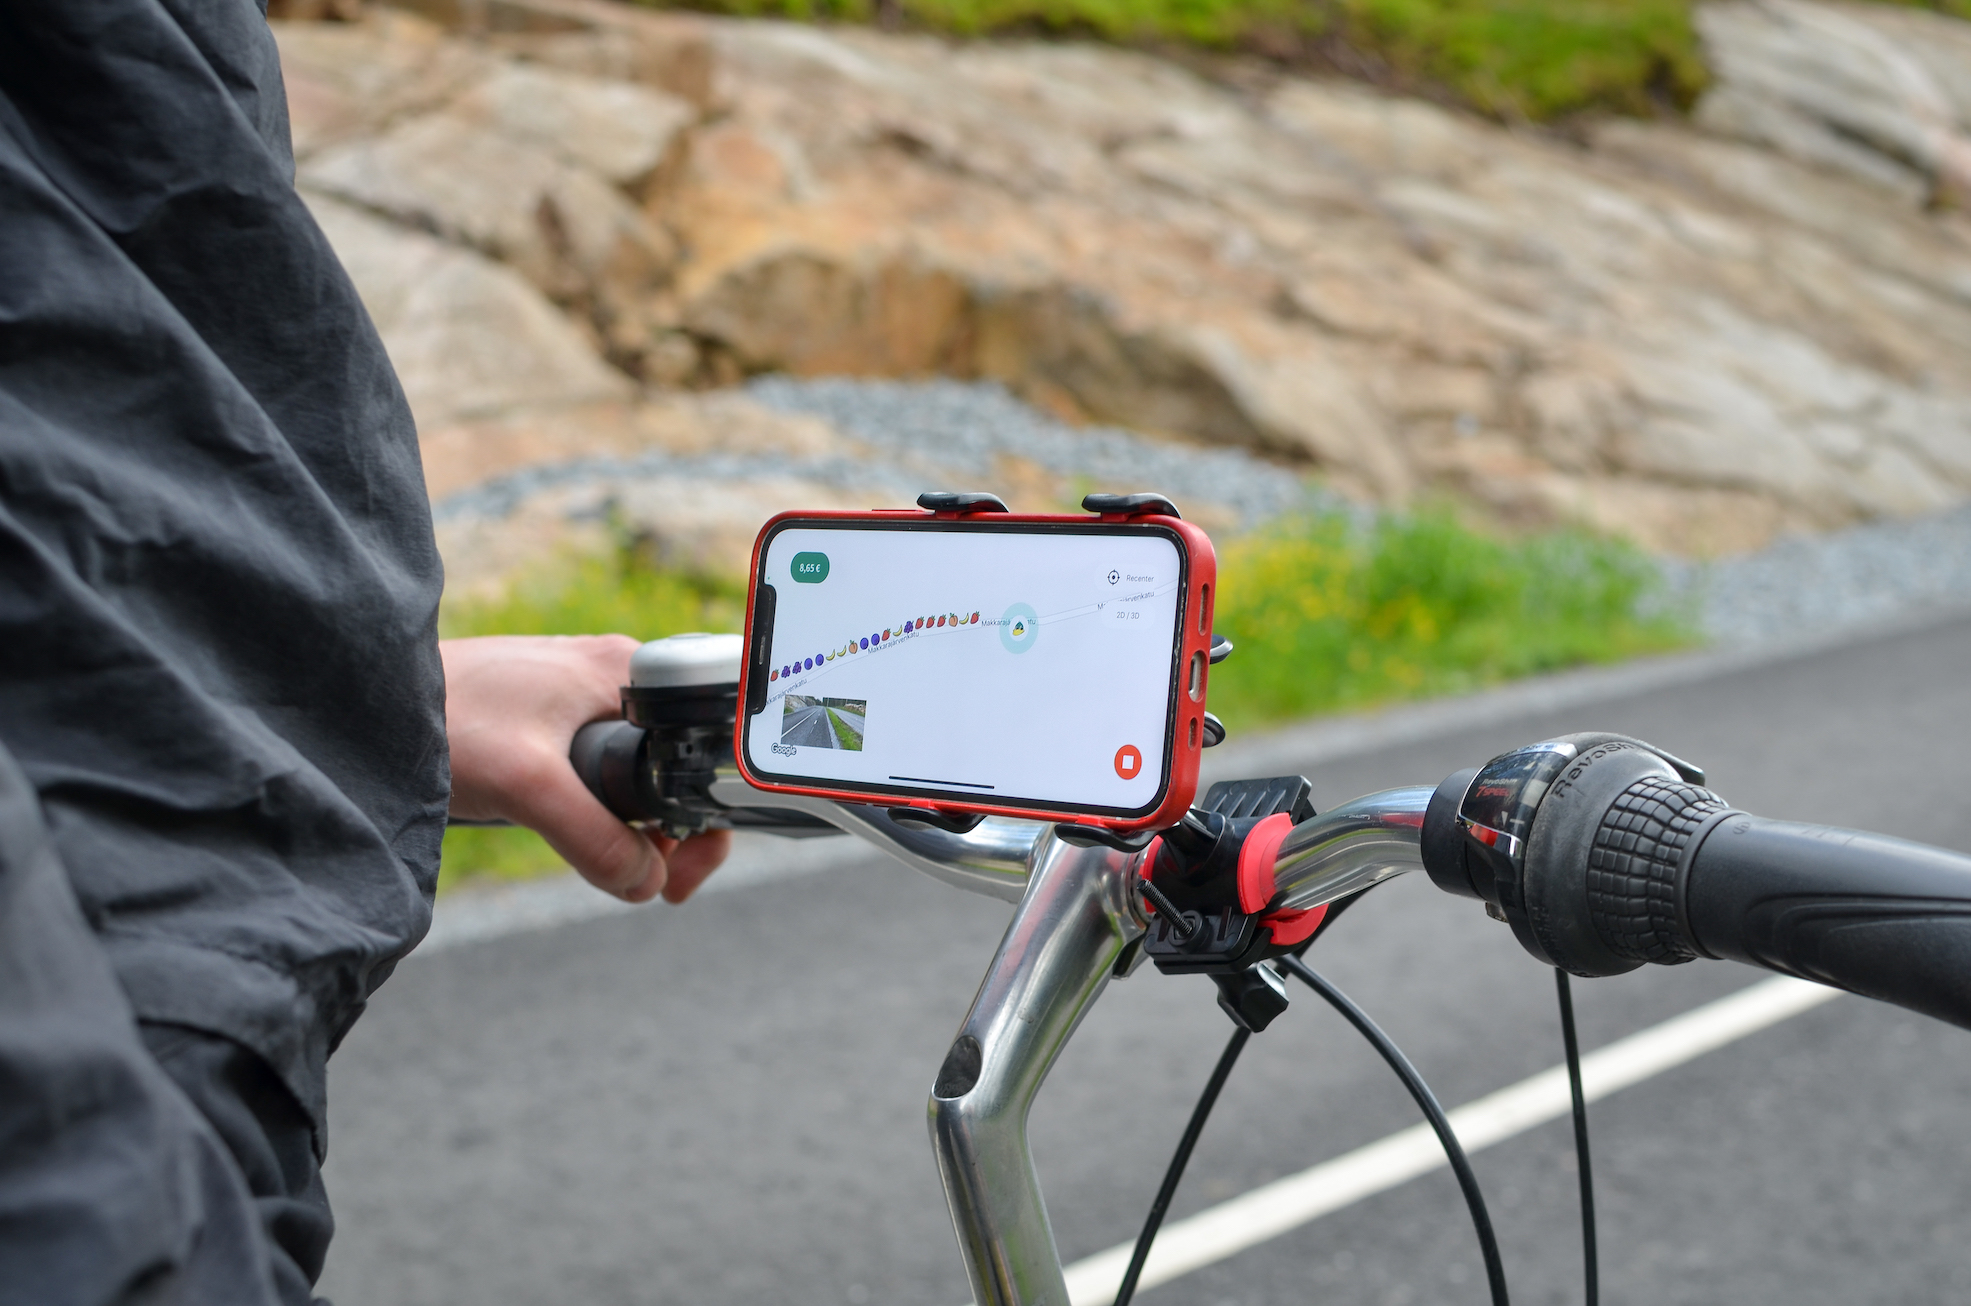 Pirkanmaalla kerätään tietoa pyöräteiden kunnosta mobiilipelin avulla